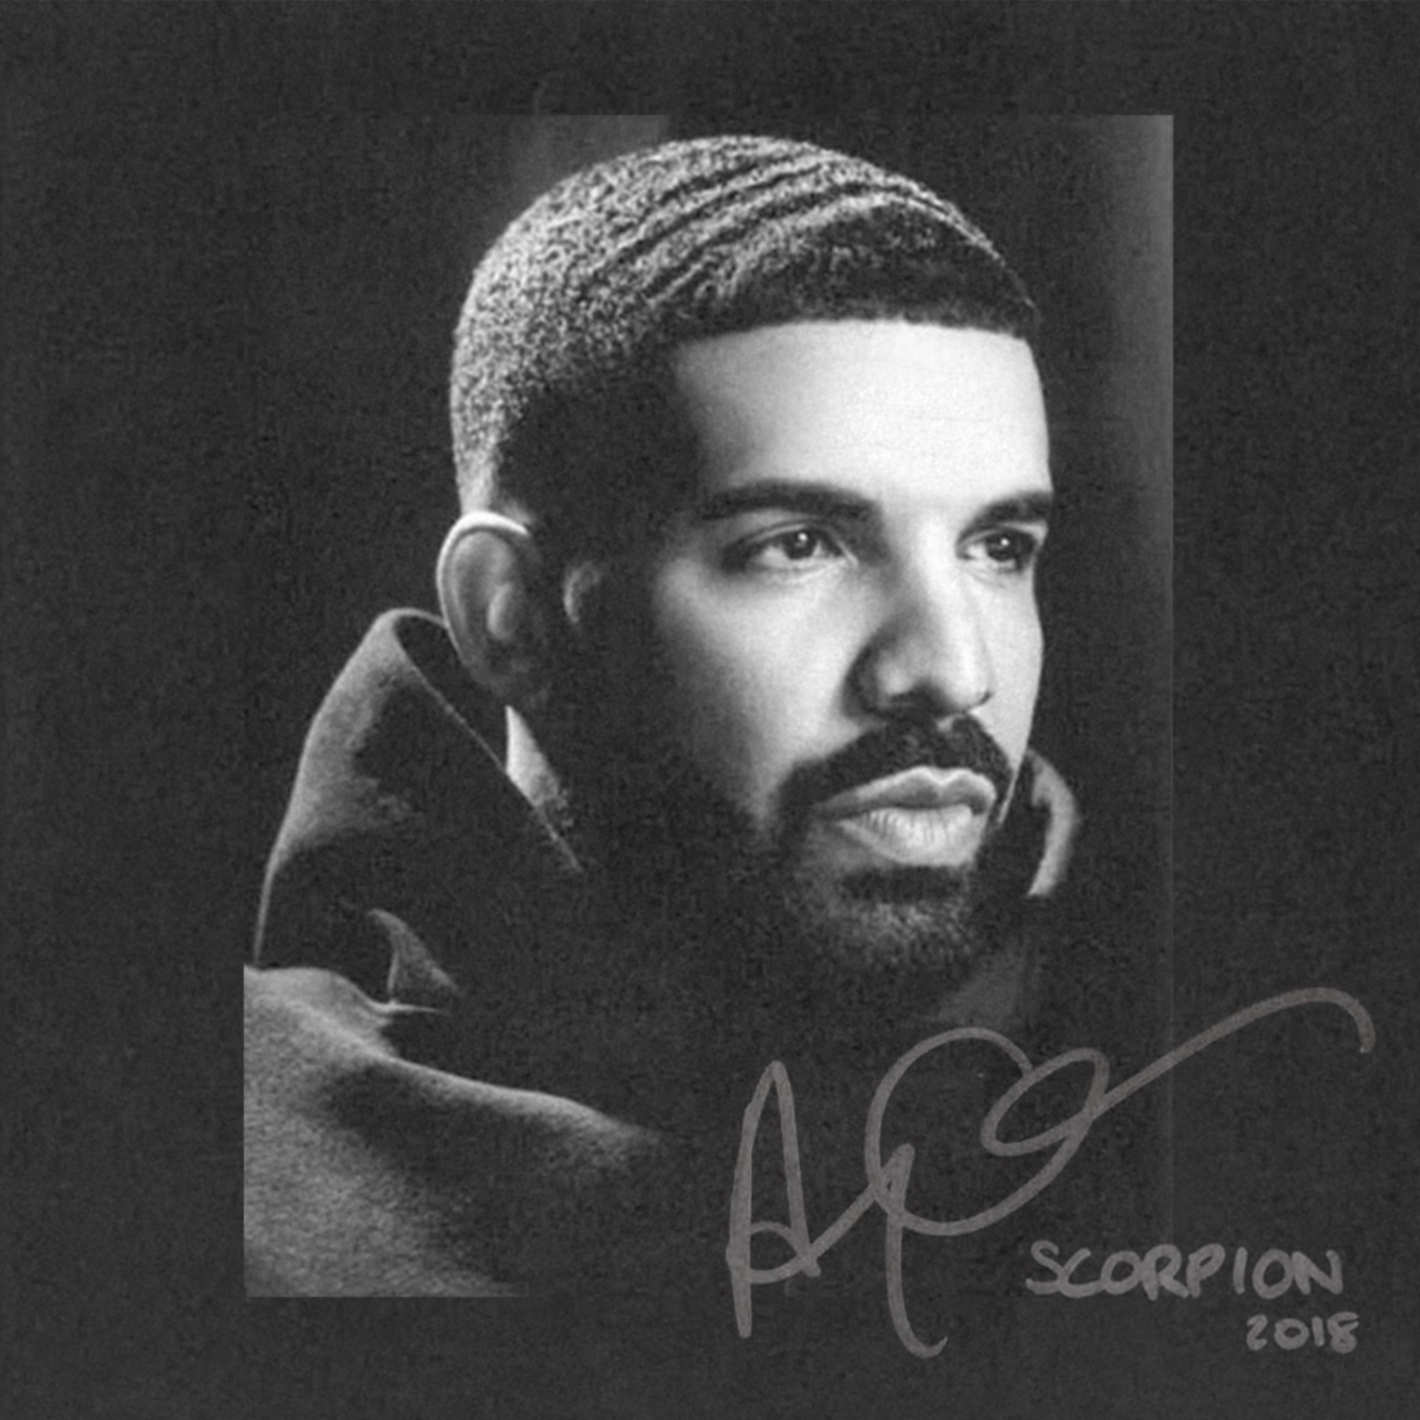 Drake Scorpion album